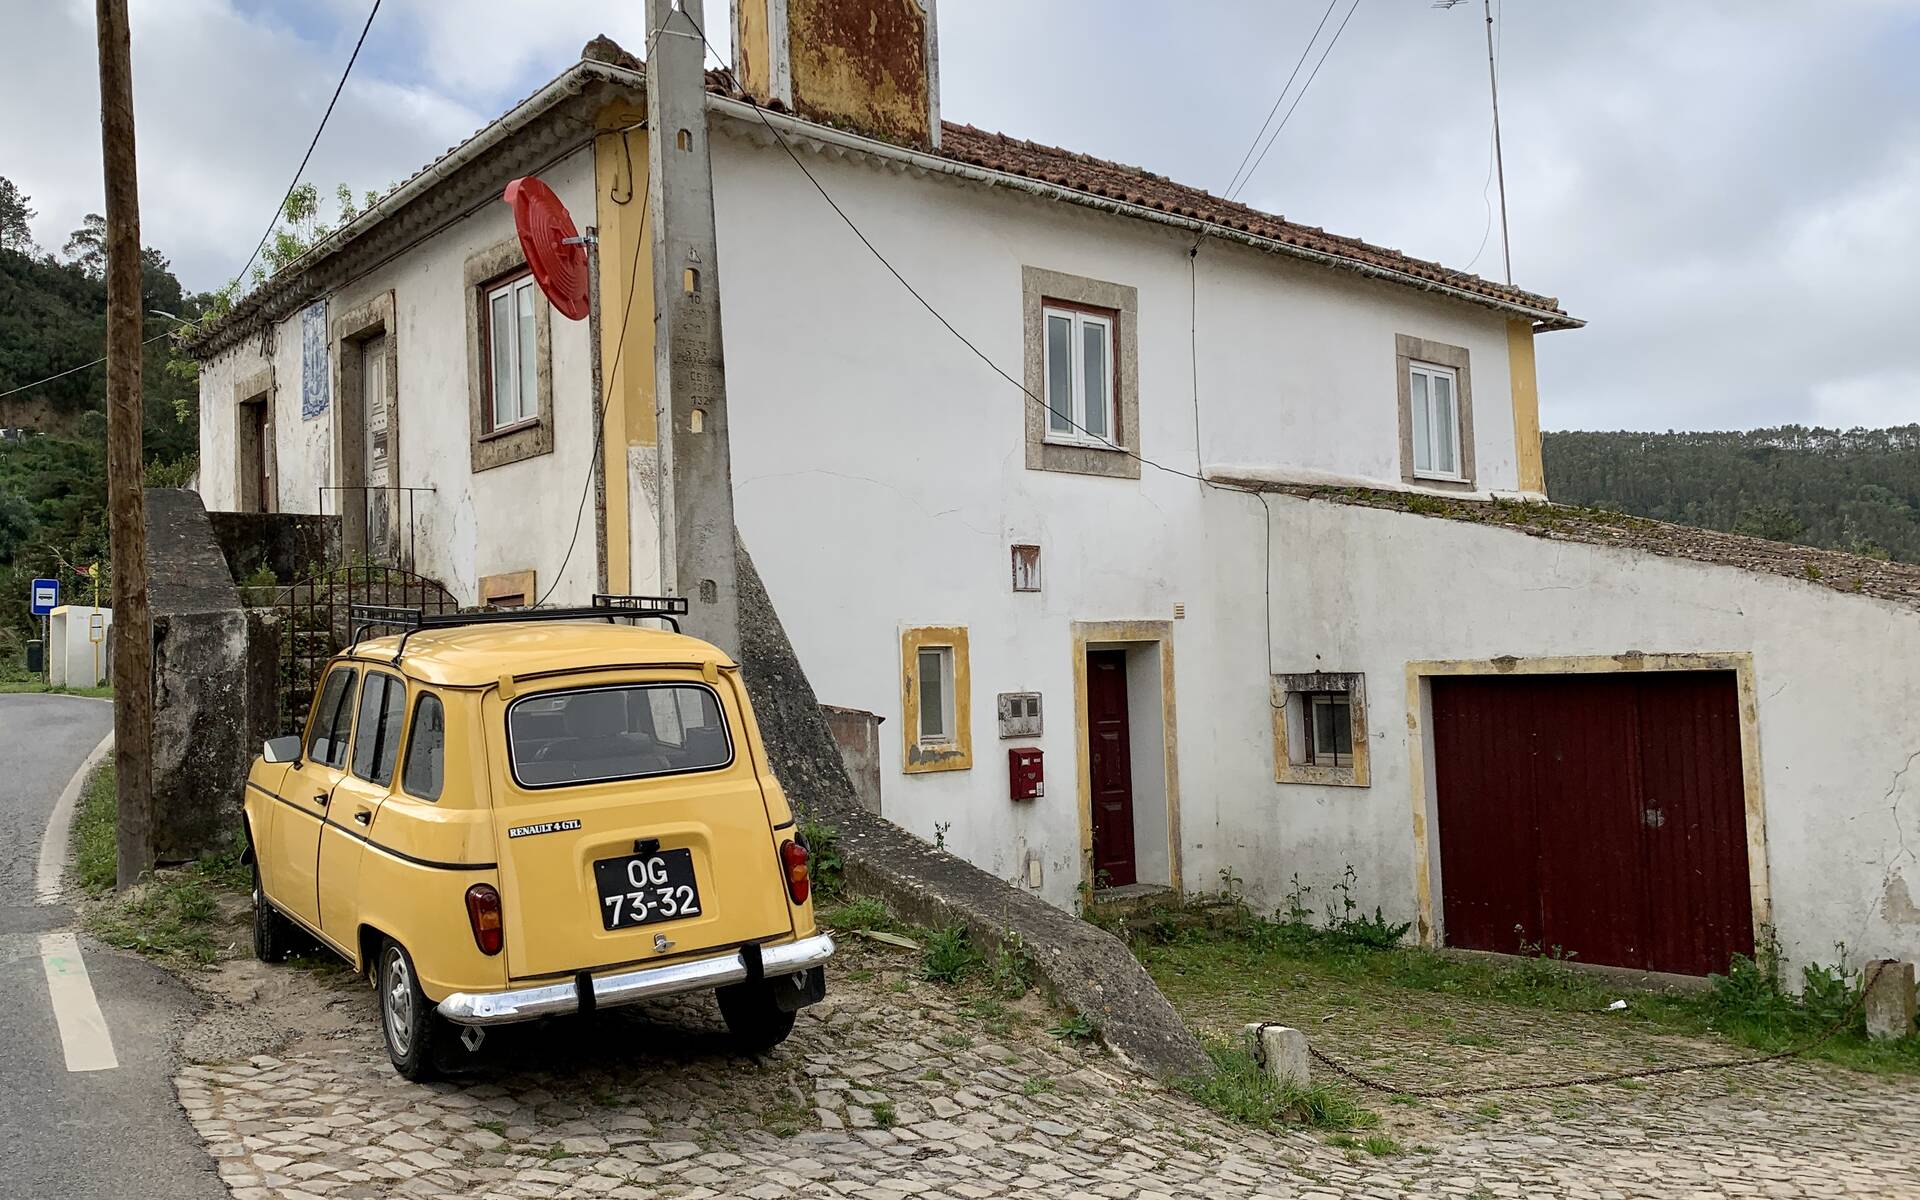 Photos : 11 véhicules spéciaux et inusités croisés au Portugal 569088-photos-11-vehicules-speciaux-et-inusites-croises-au-portugal